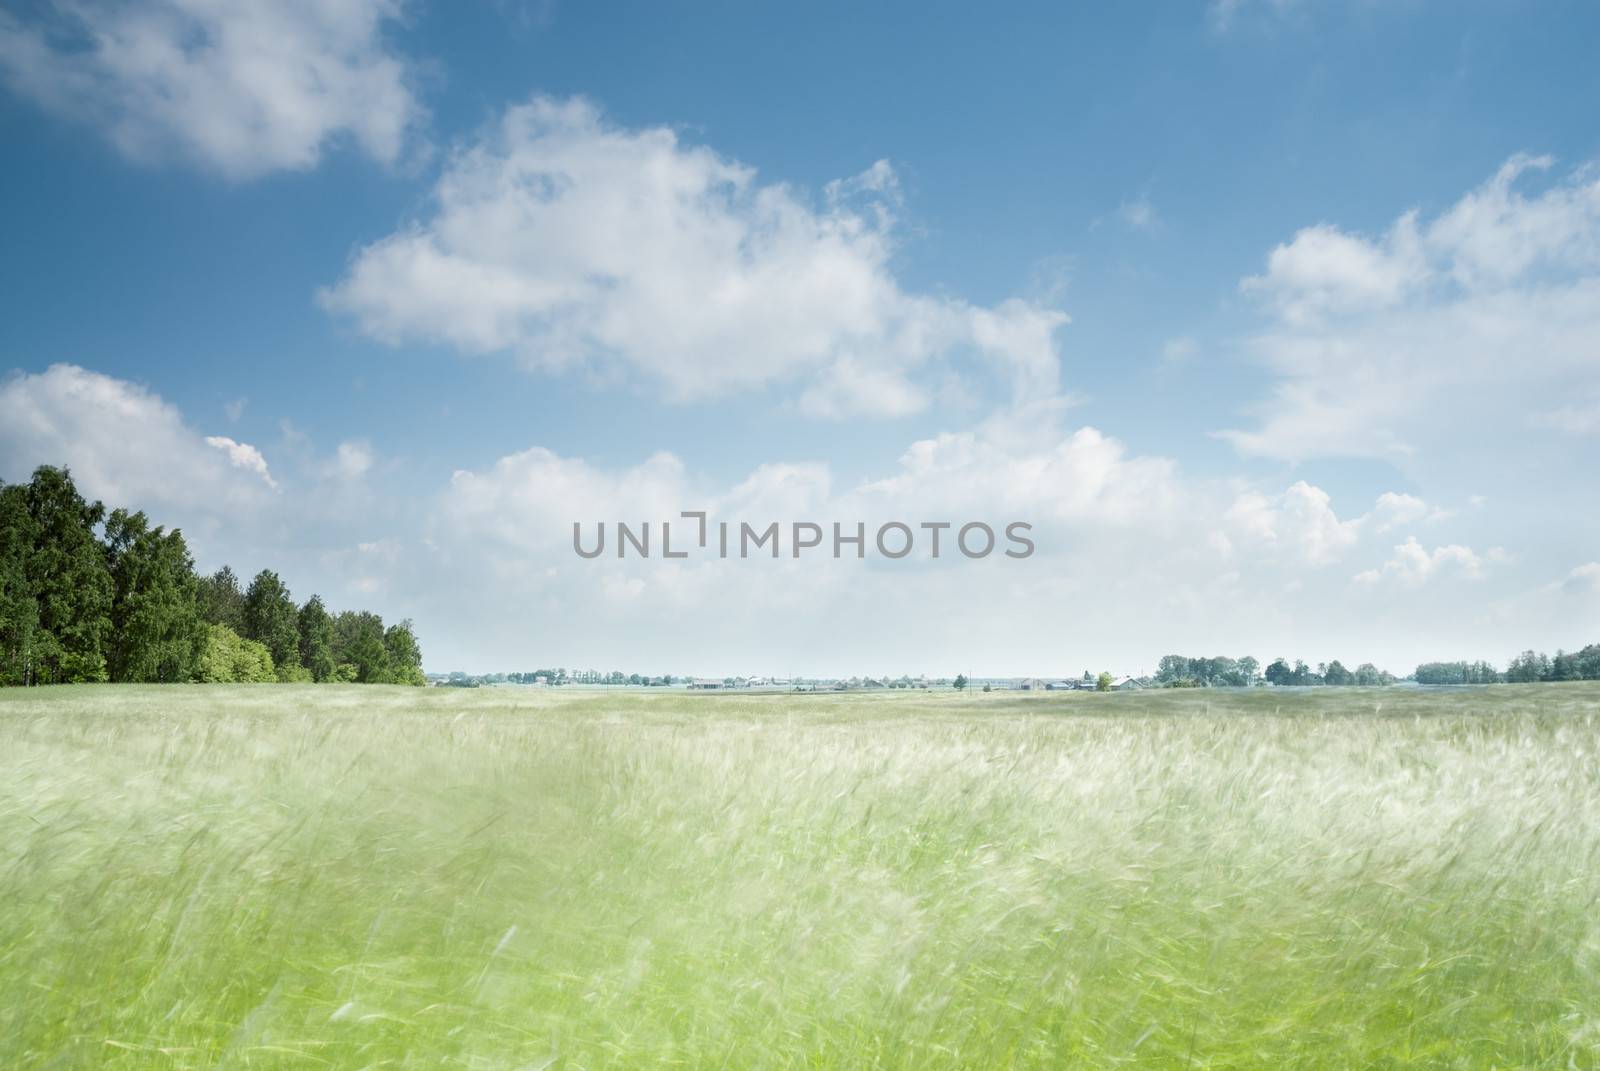 Motion blur in field. Rural landscape, Poland.